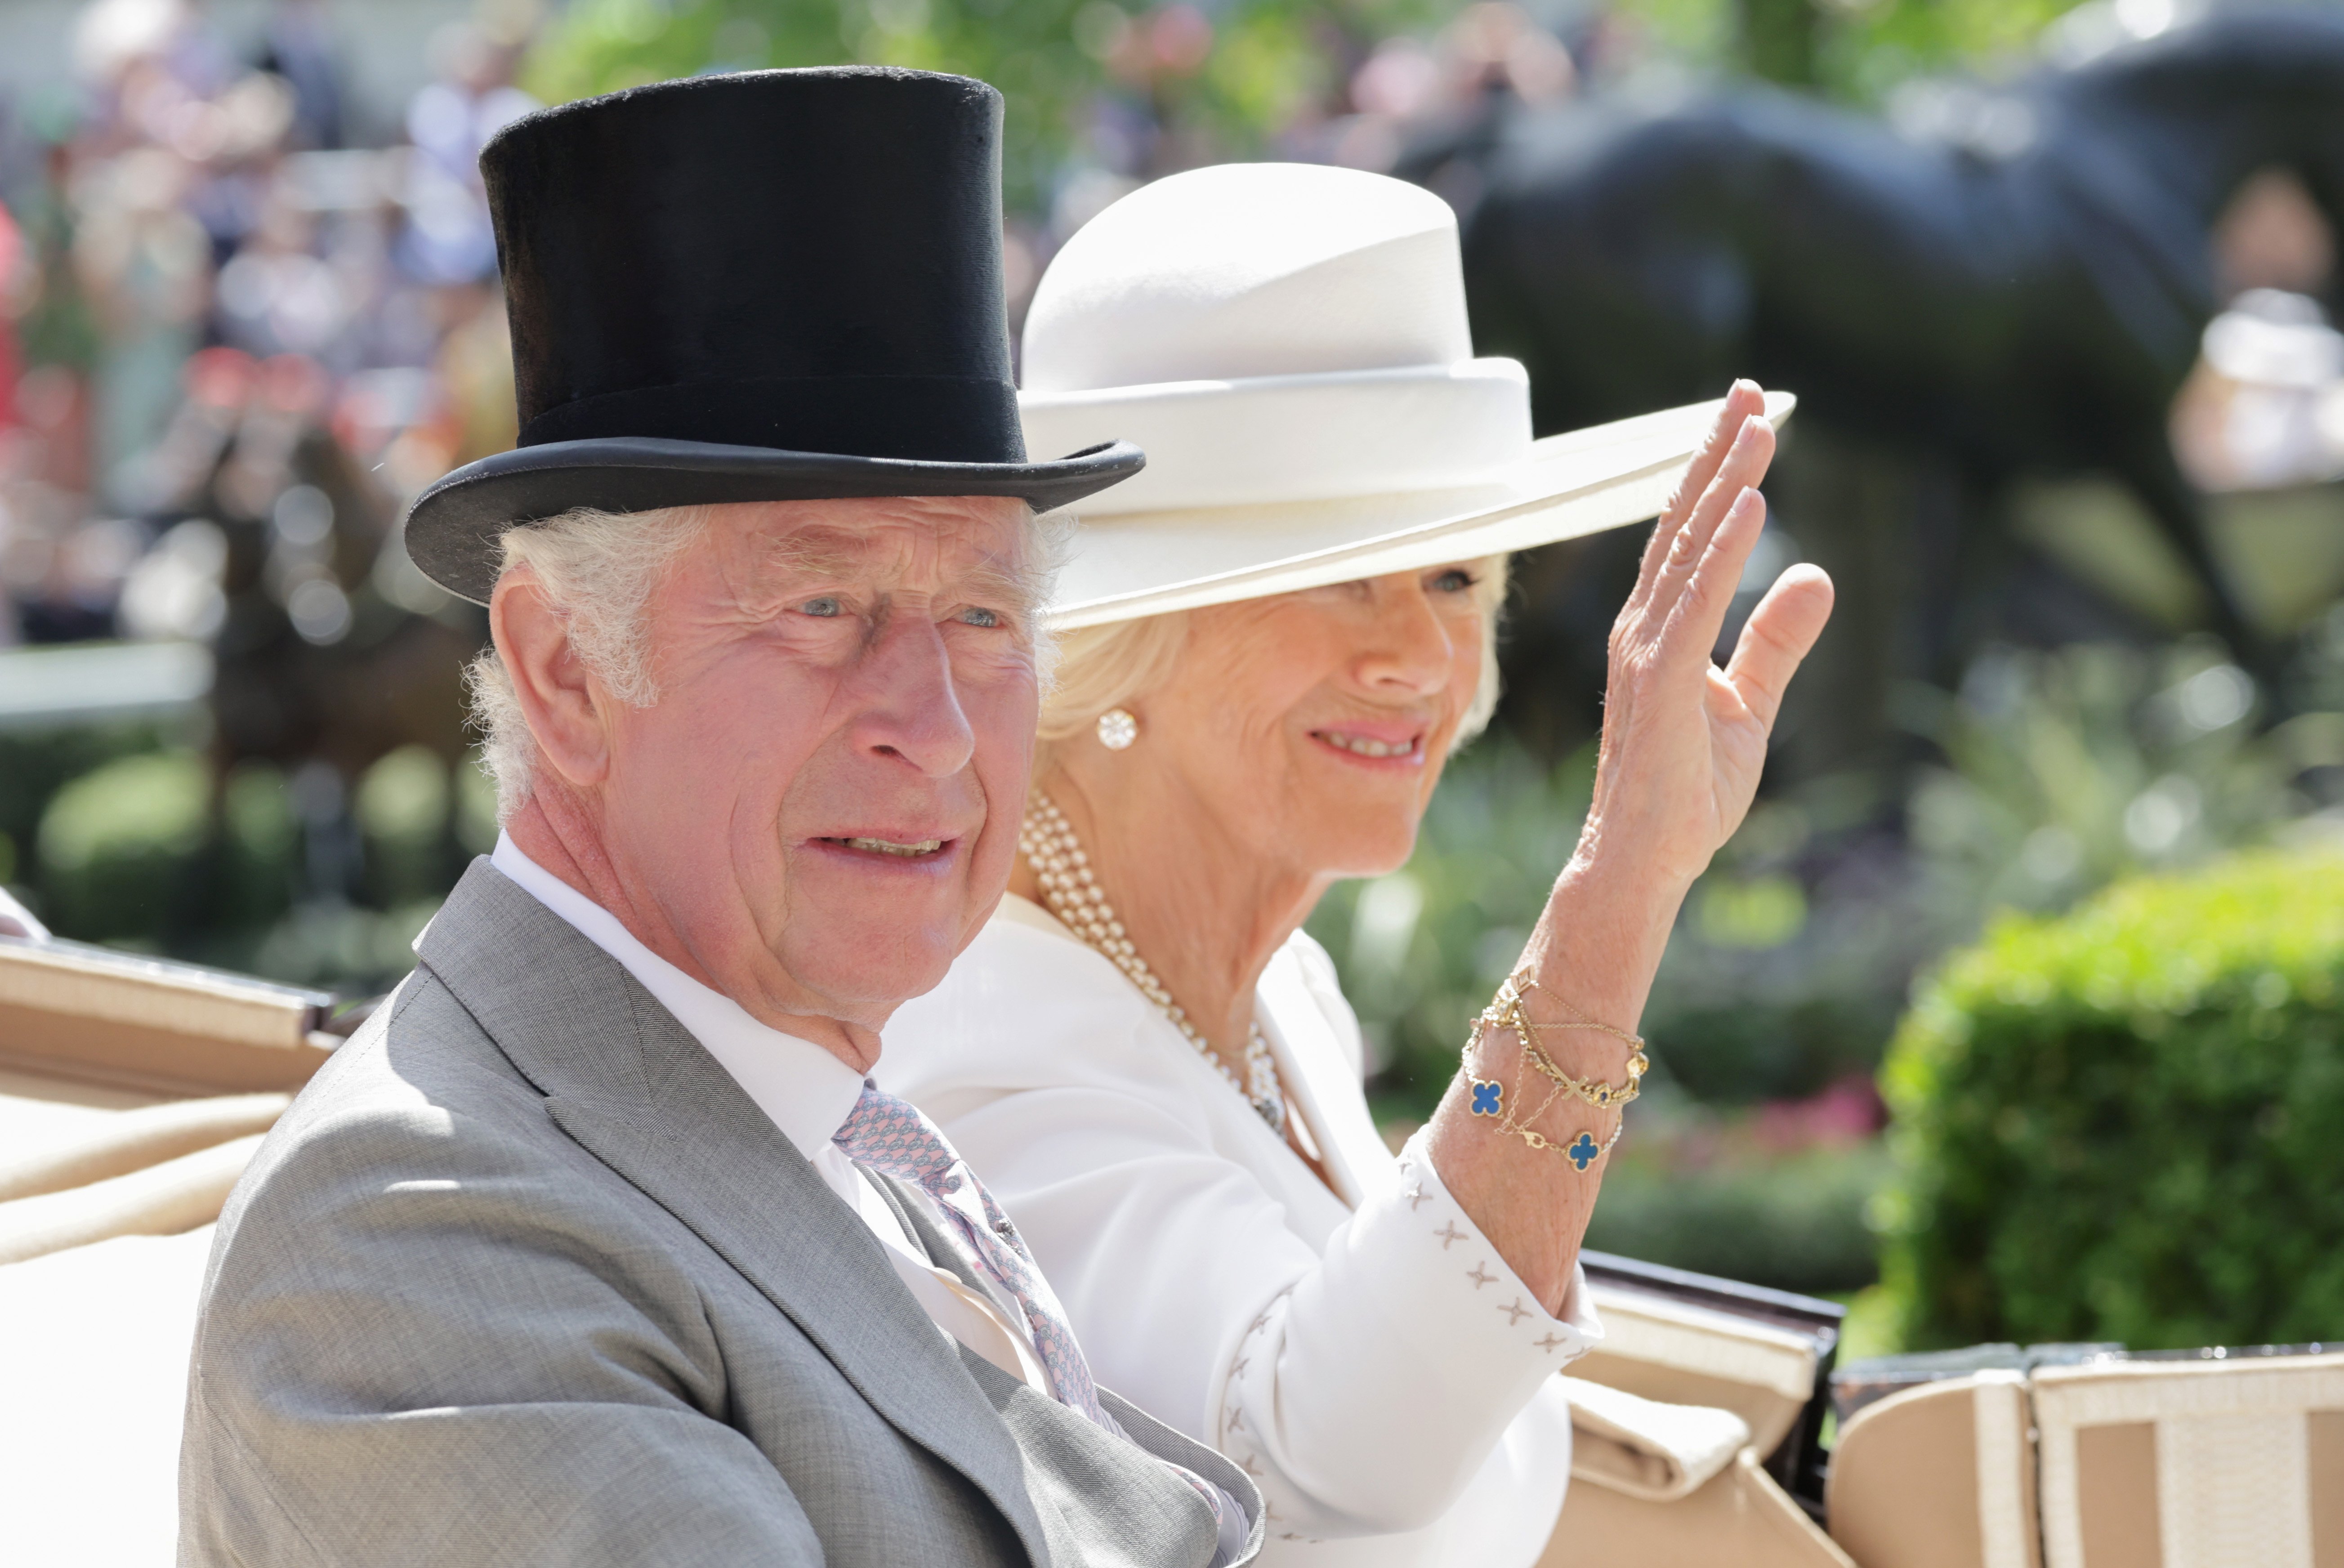 Camilla, duchesse de Cornouailles, photographiée en train de saluer alors qu'elle et le prince Charles arrivent dans l'anneau de parade sur le carrosse royal alors qu'ils assistent à Royal Ascot 2022 à l'hippodrome d'Ascot le 15 juin 2022 à Ascot, en Angleterre | Source : Getty Images